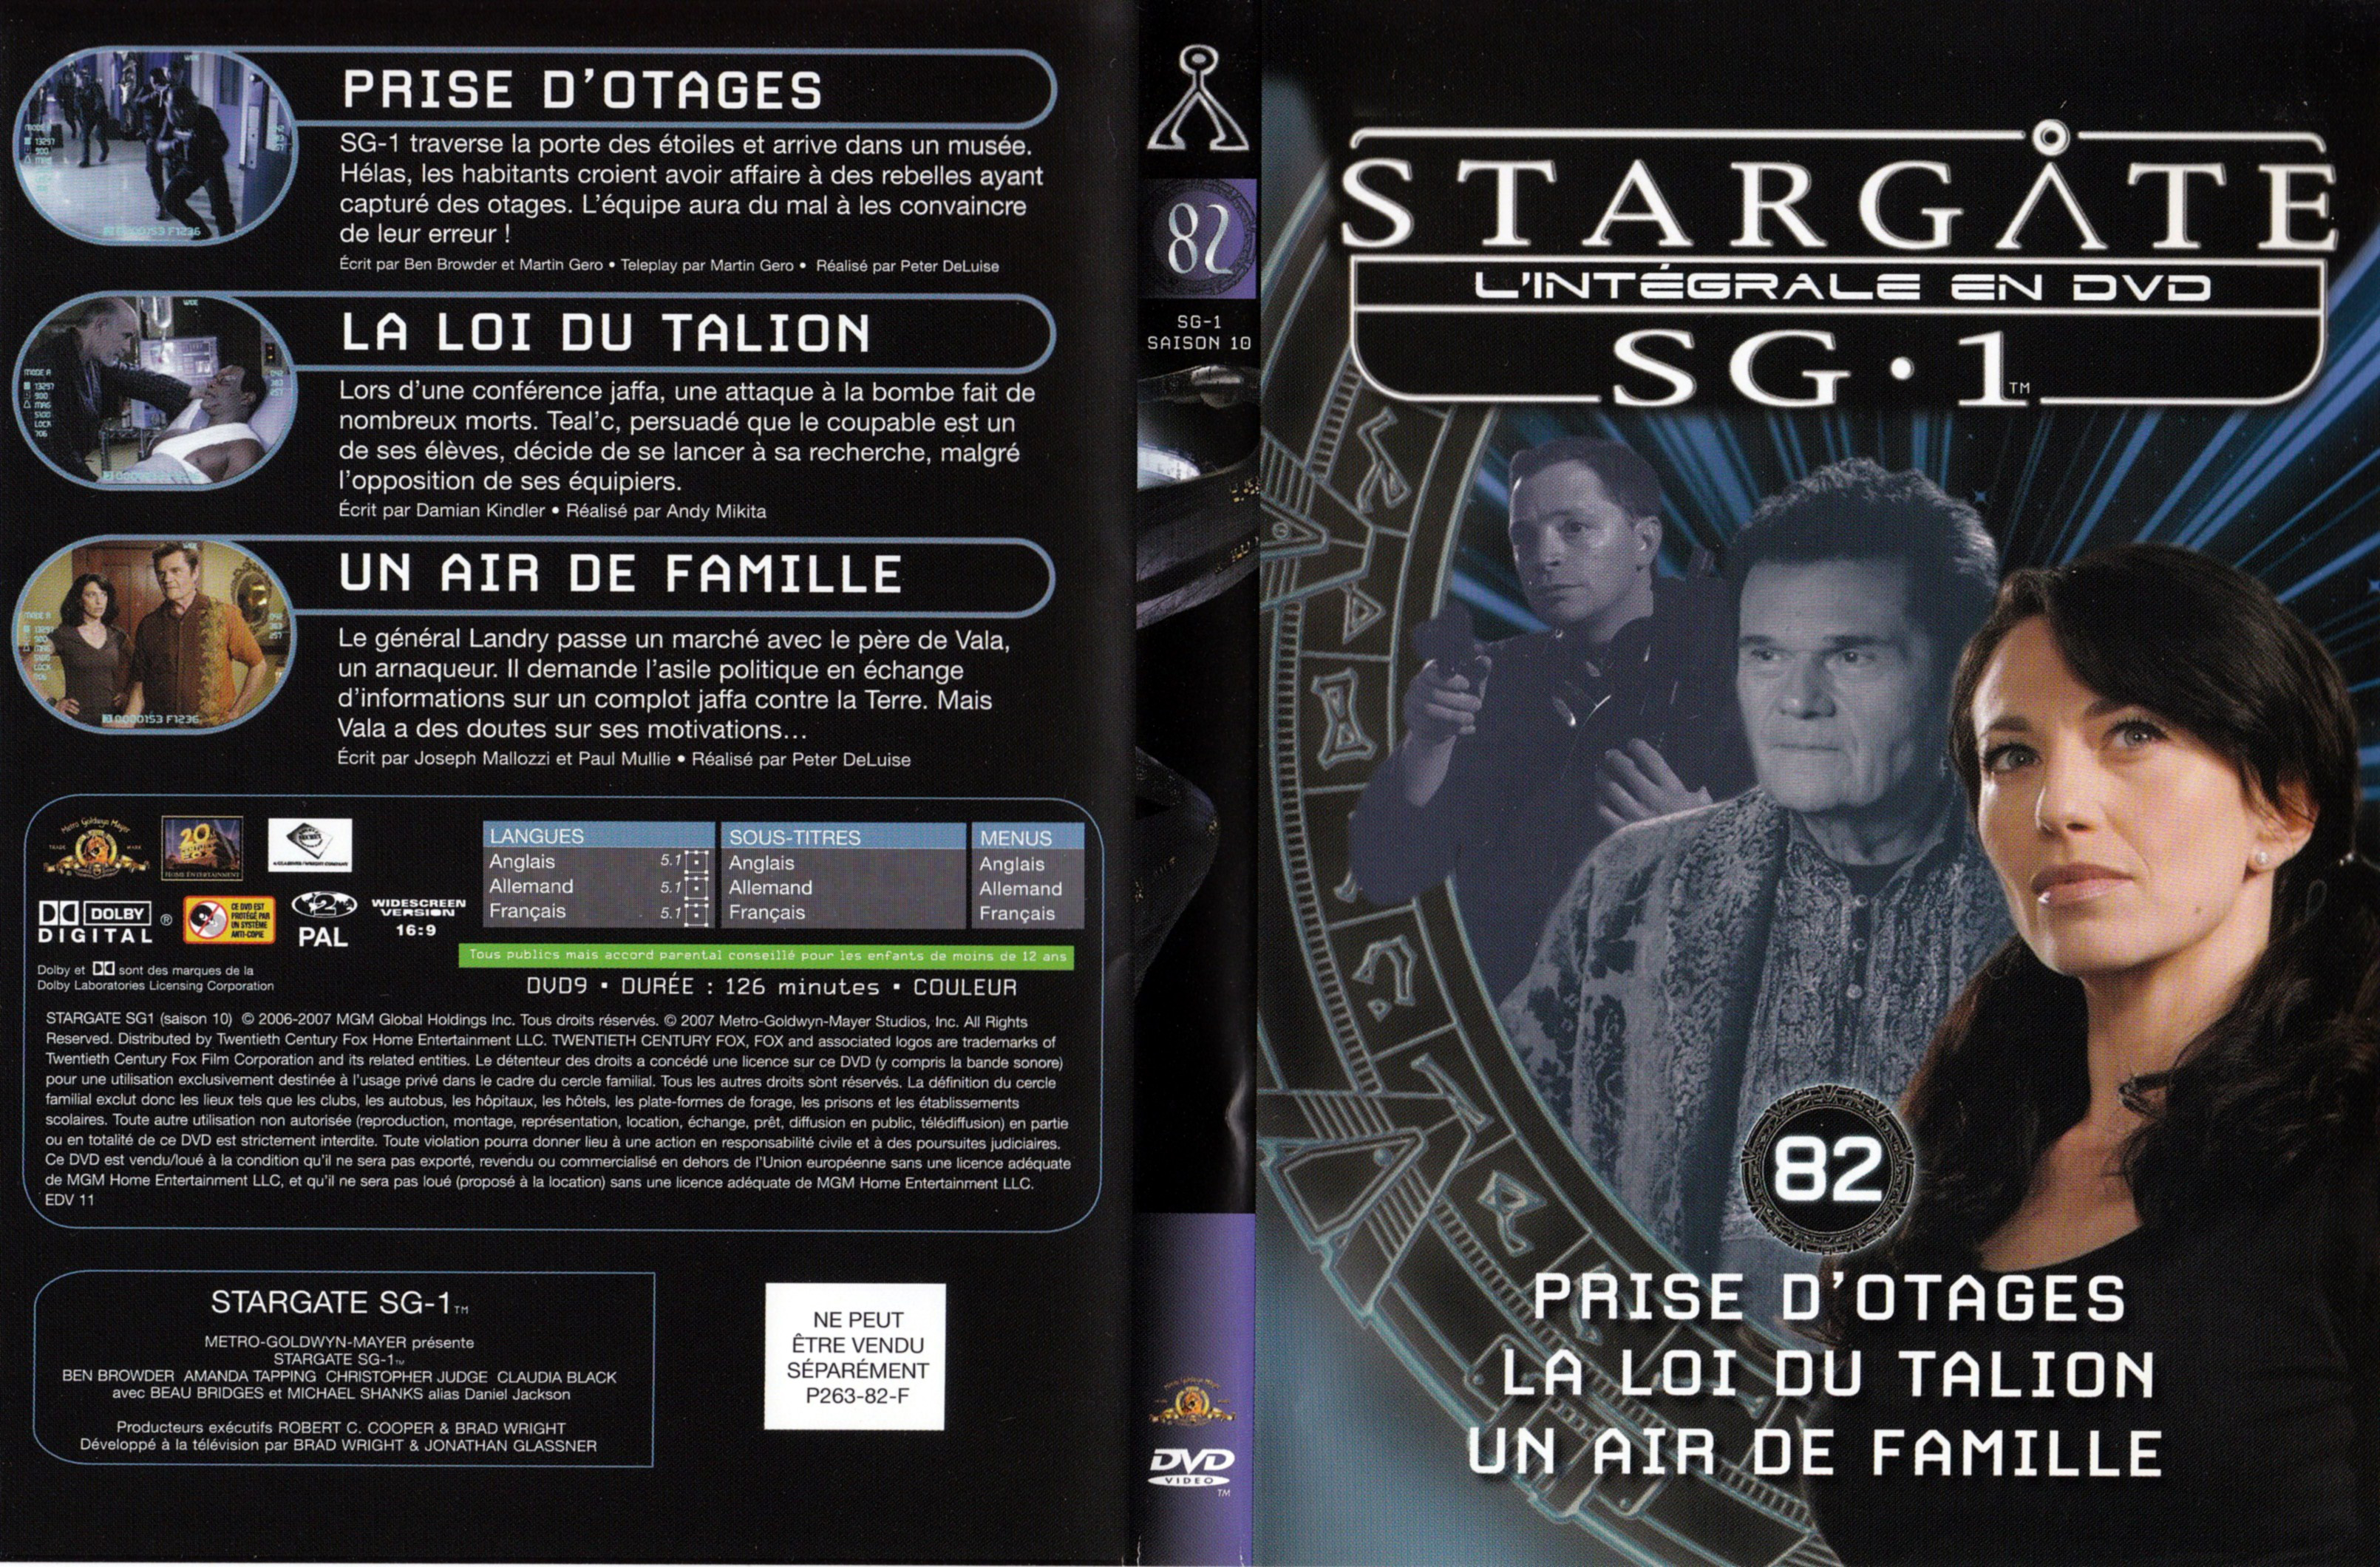 Jaquette DVD Stargate SG1 Intgrale Saison 10 vol 82